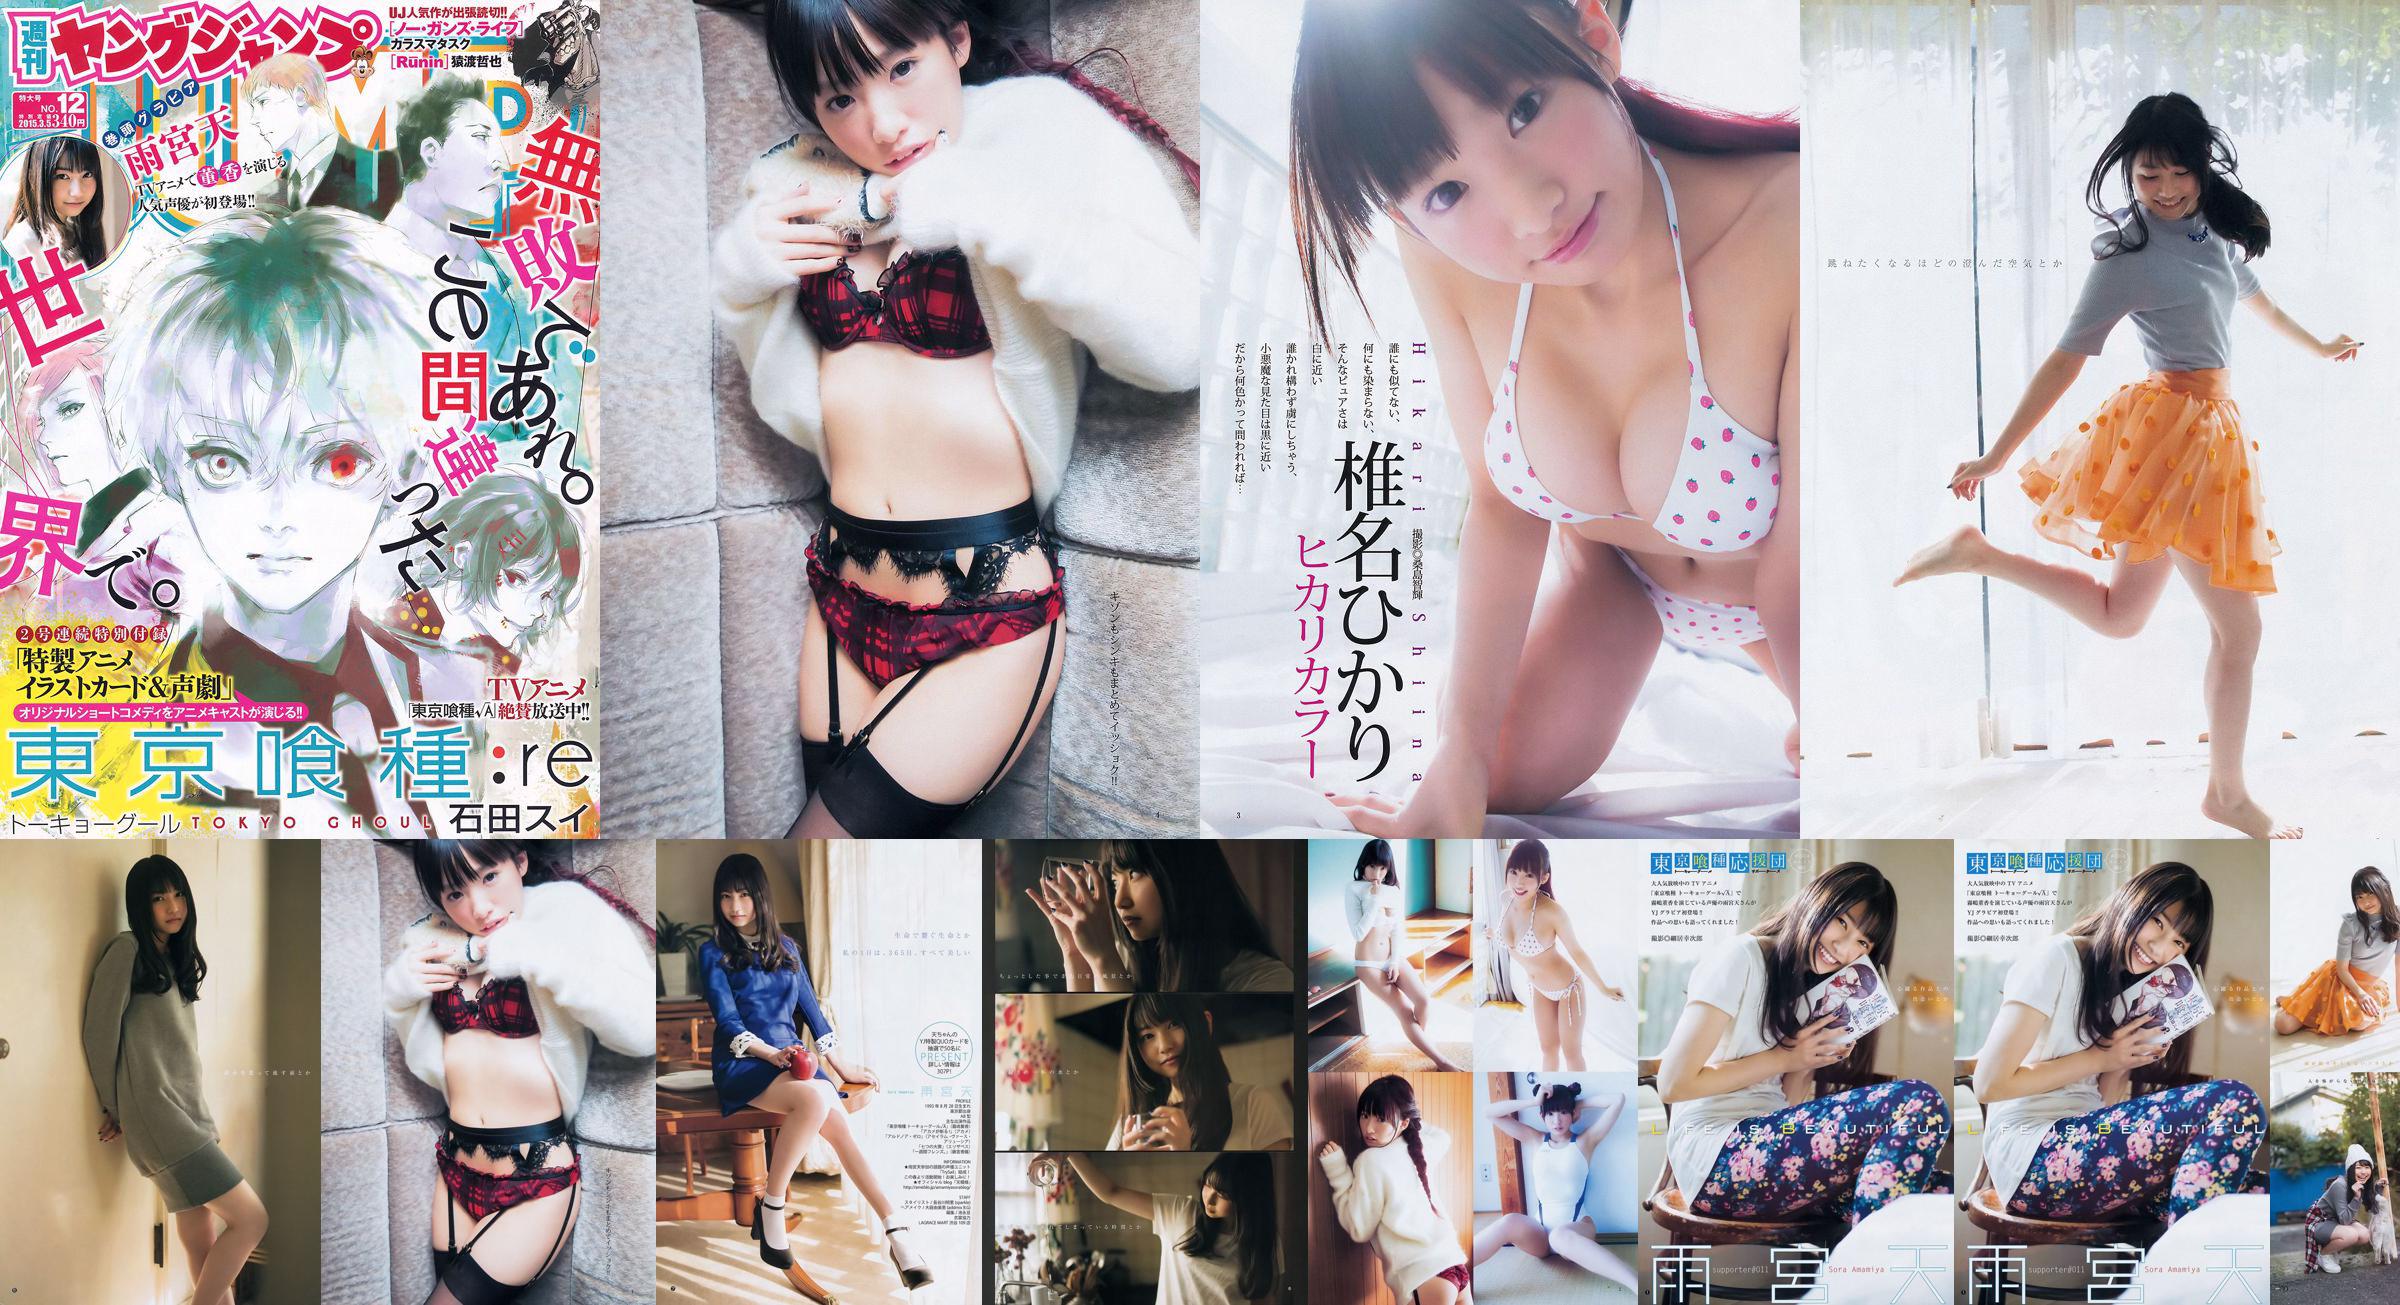 Amamiya Tian Shiina ひかり [Weekly Young Jump] 2015 No.12 Photo Magazine No.145ea8 Page 1